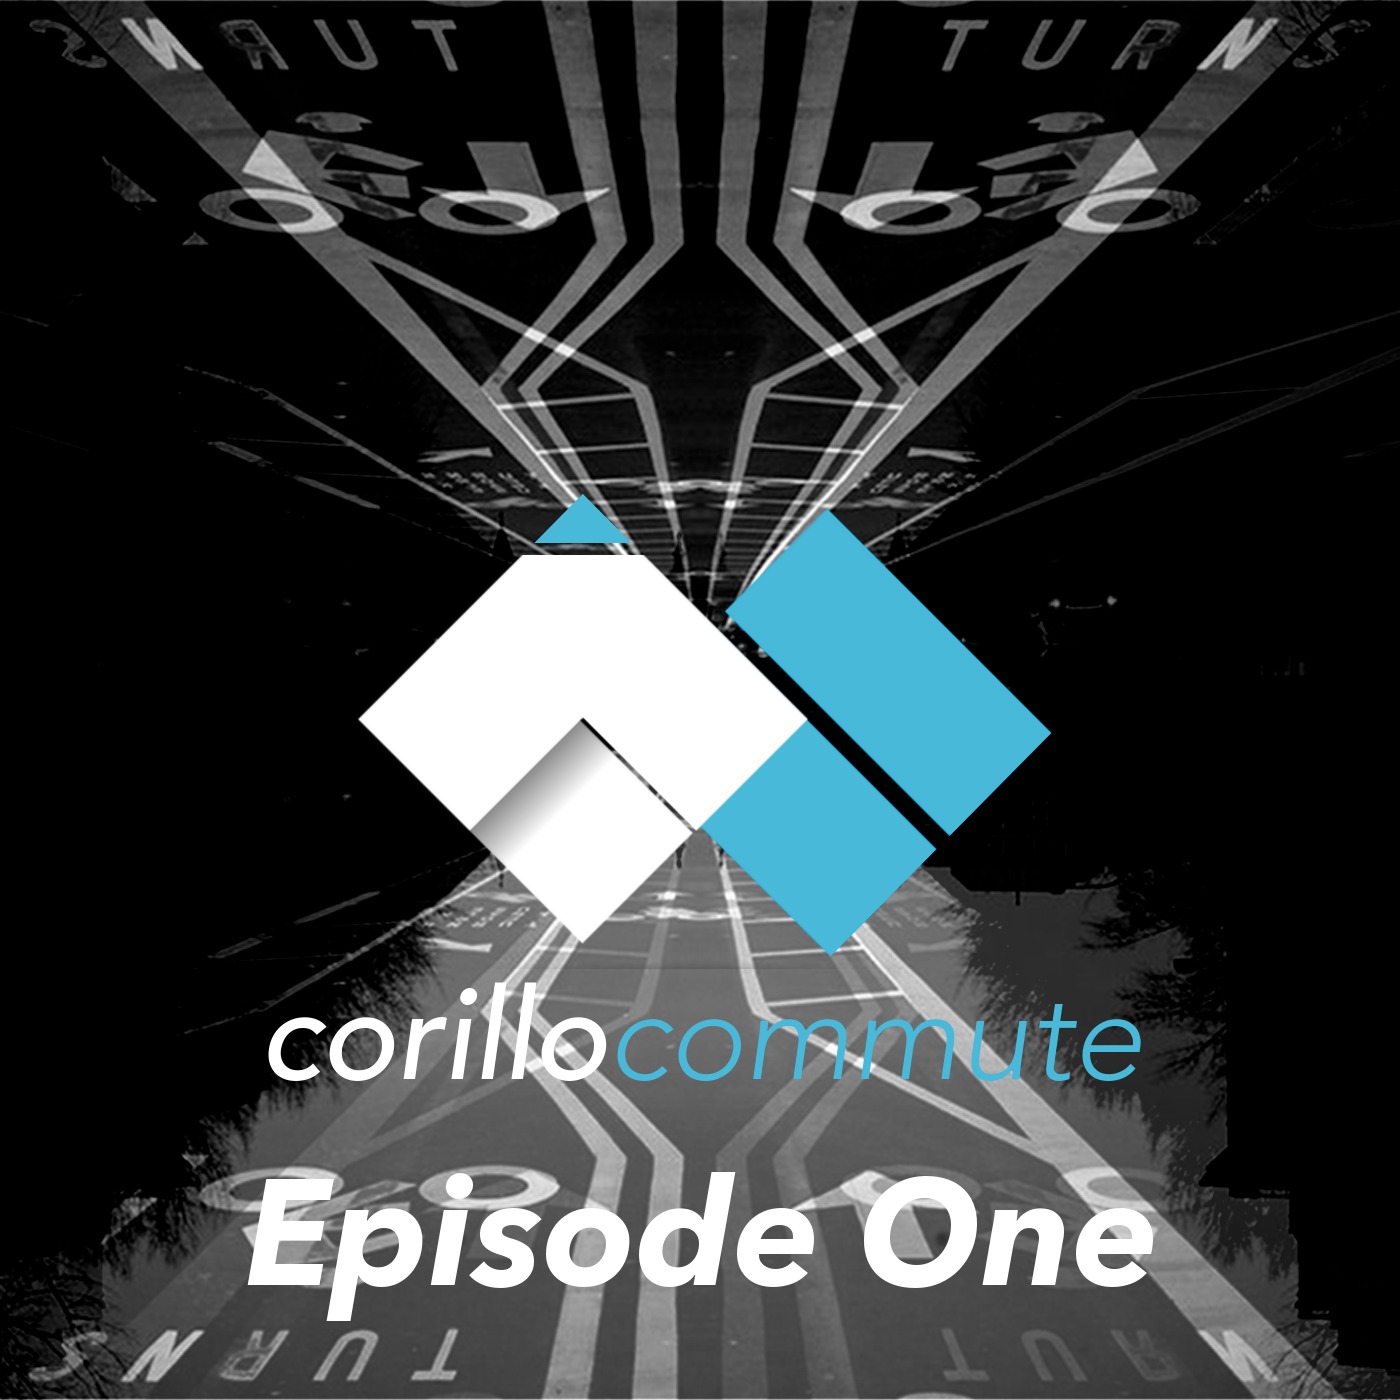 Podcast: Corillo Commute Episode 1